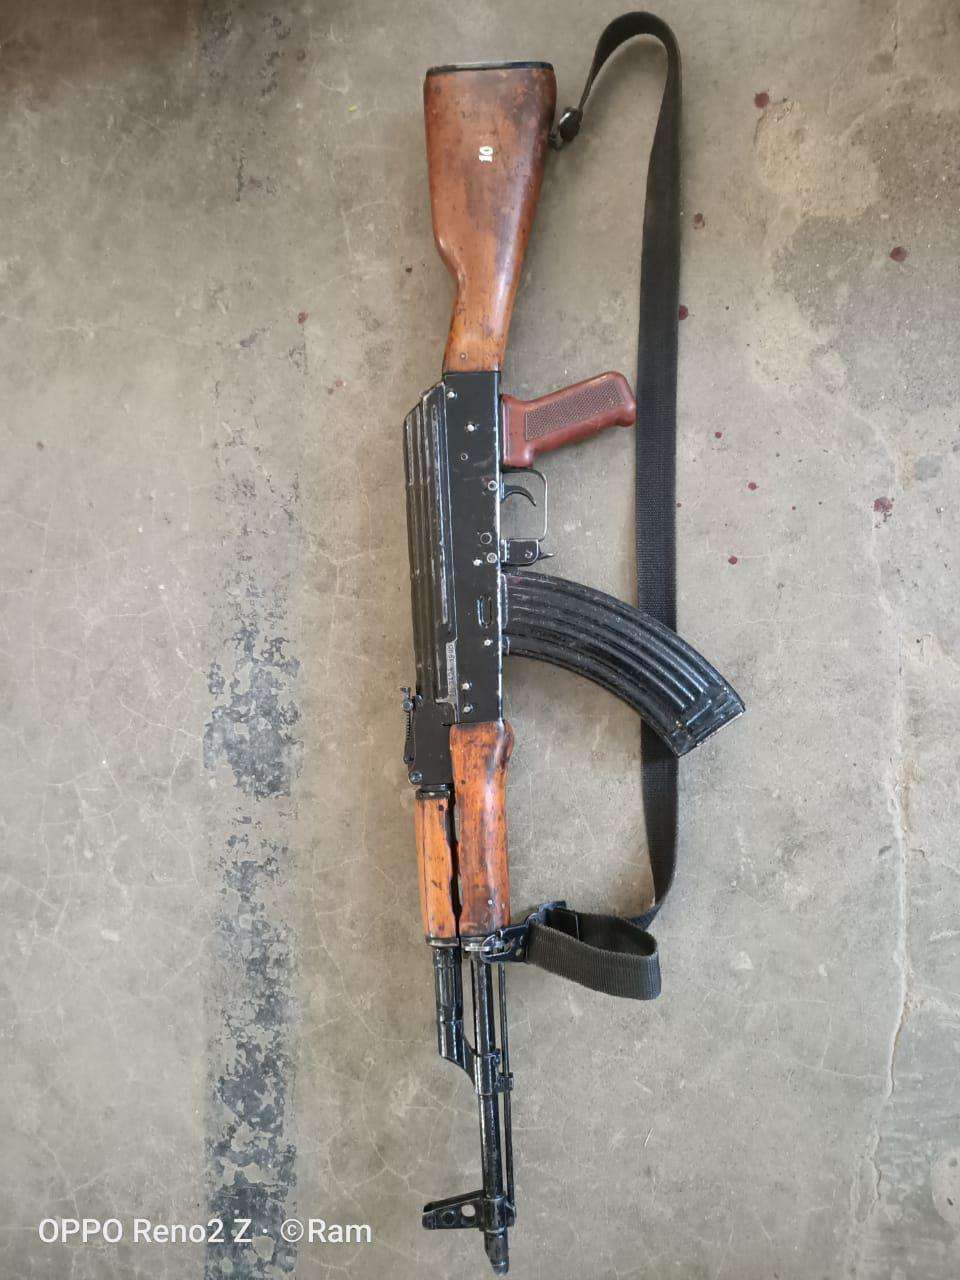  AK-47 service rifle